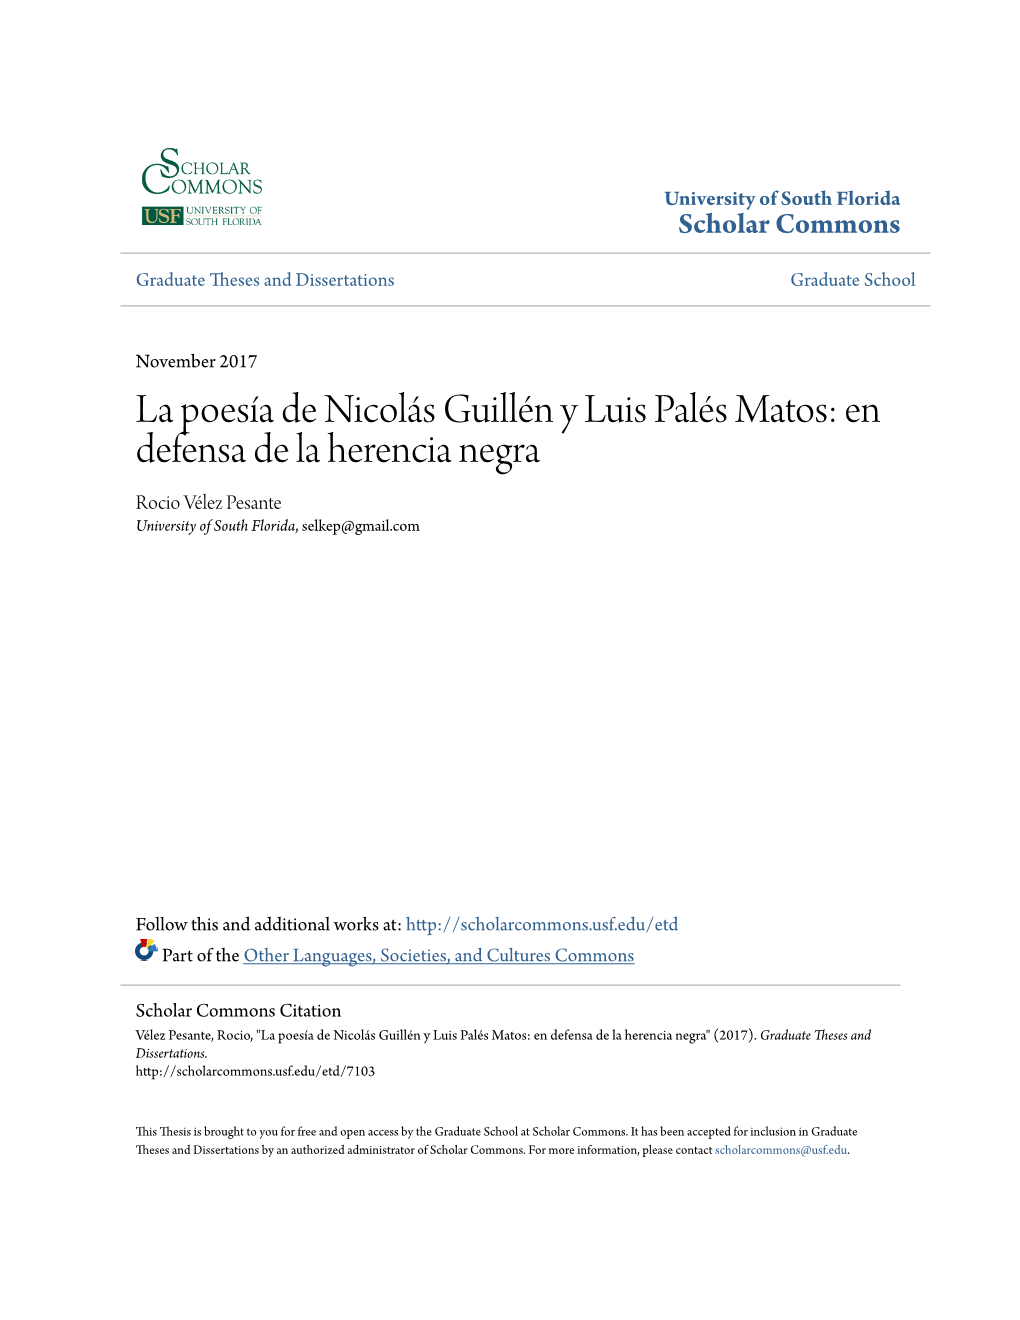 La Poesía De Nicolás Guillén Y Luis Palés Matos: En Defensa De La Herencia Negra Rocio Vélez Pesante University of South Florida, Selkep@Gmail.Com